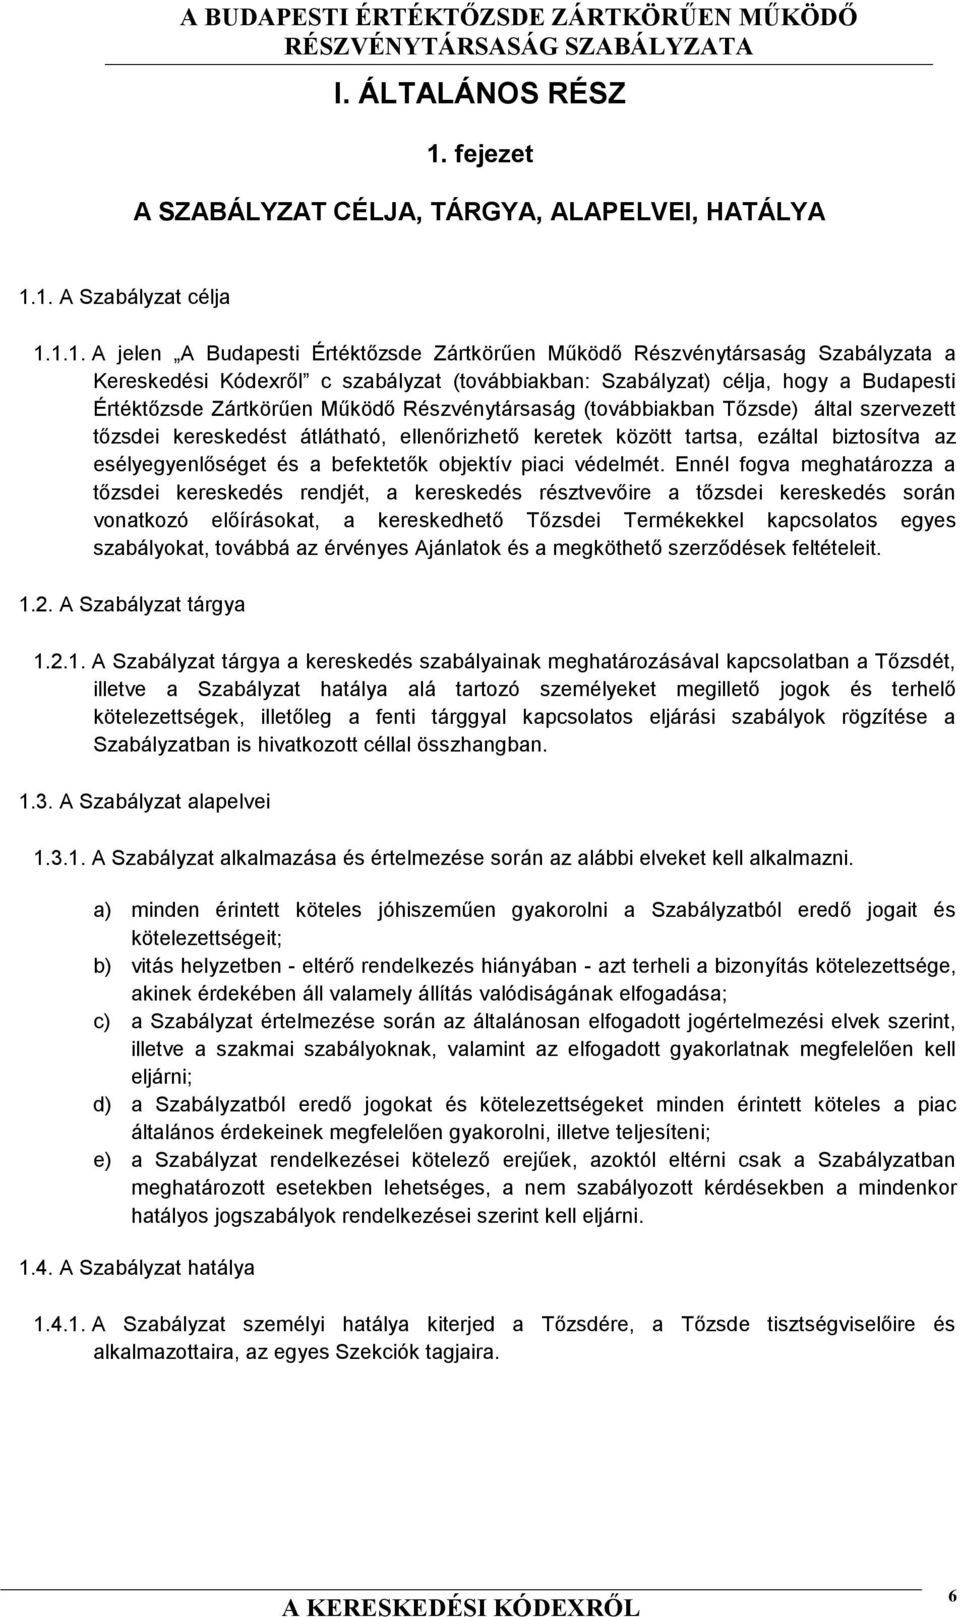 1. A Szabályzat célja 1.1.1. A jelen A Budapesti Értéktőzsde Zártkörűen Működő Részvénytársaság Szabályzata a Kereskedési Kódexről c szabályzat (továbbiakban: Szabályzat) célja, hogy a Budapesti